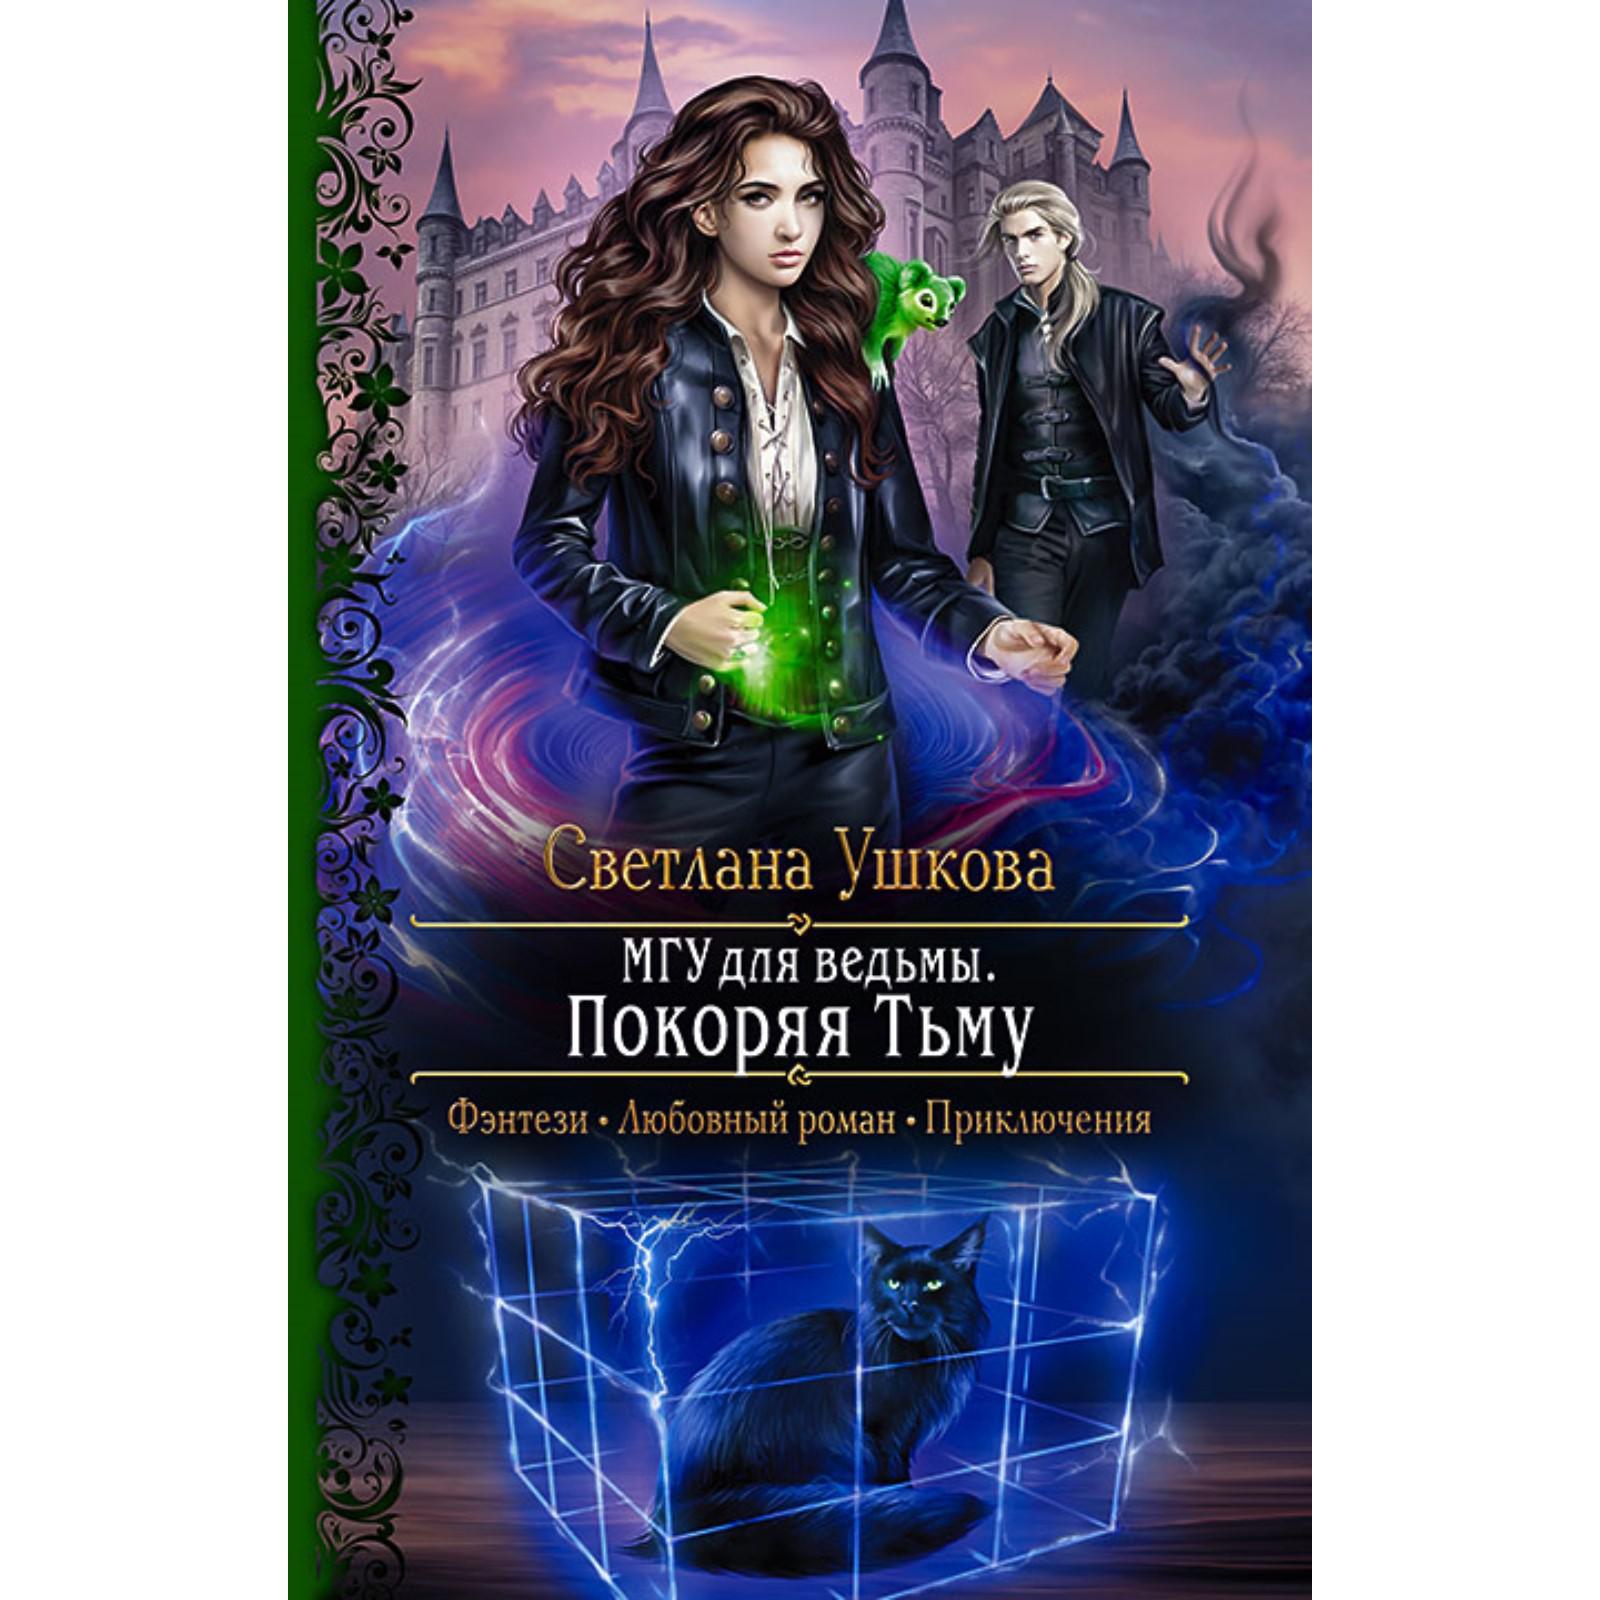 Книги про ведьмы фэнтези магические